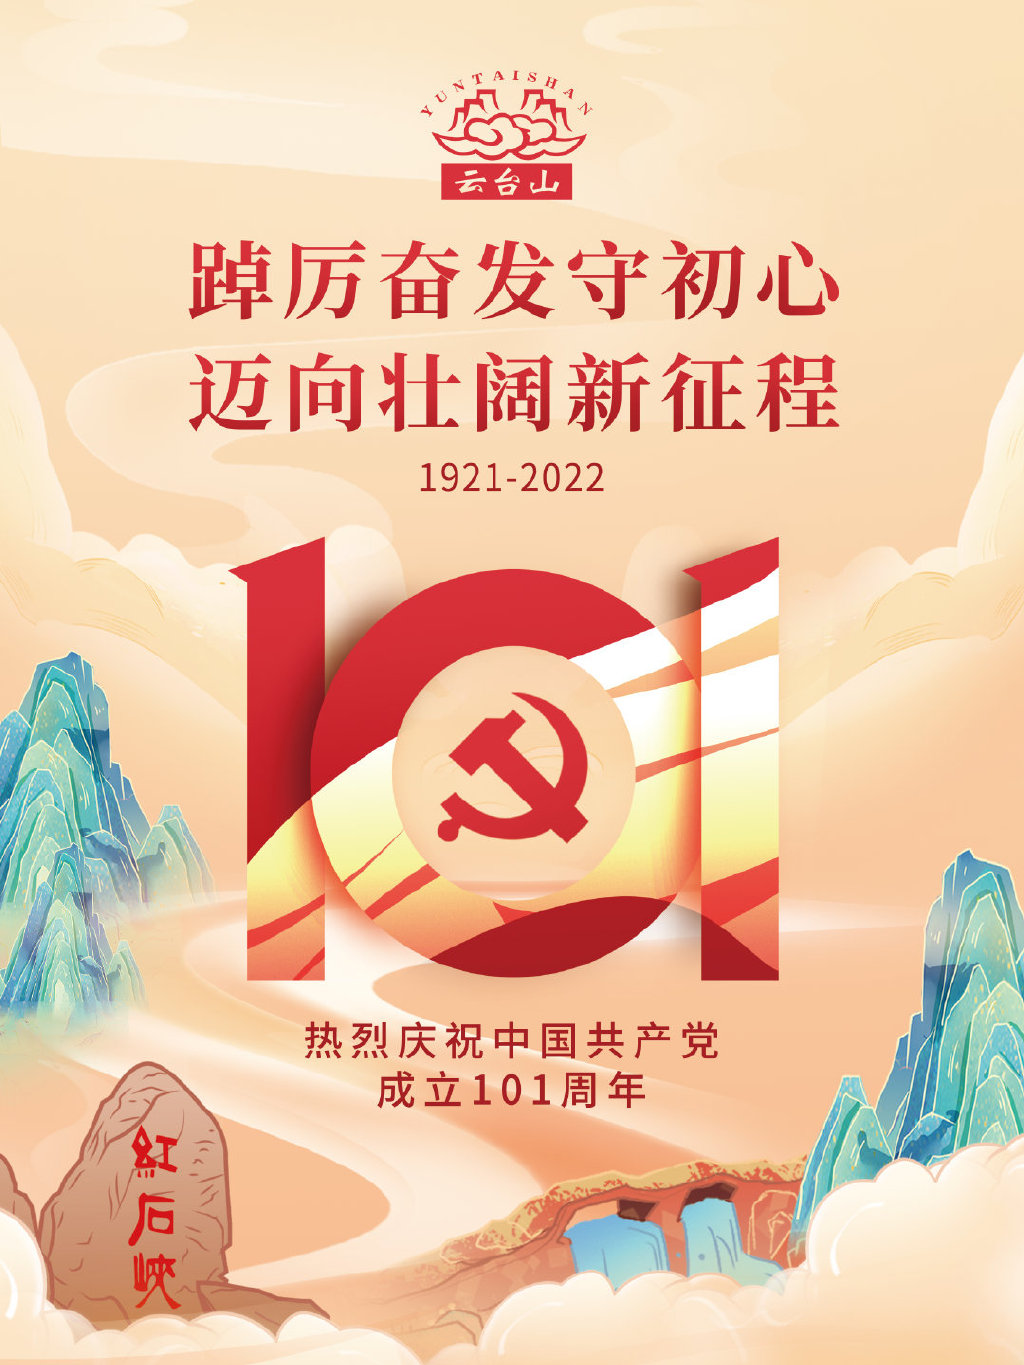 今天是党的生日 庆祝中国共产党成立101周年！